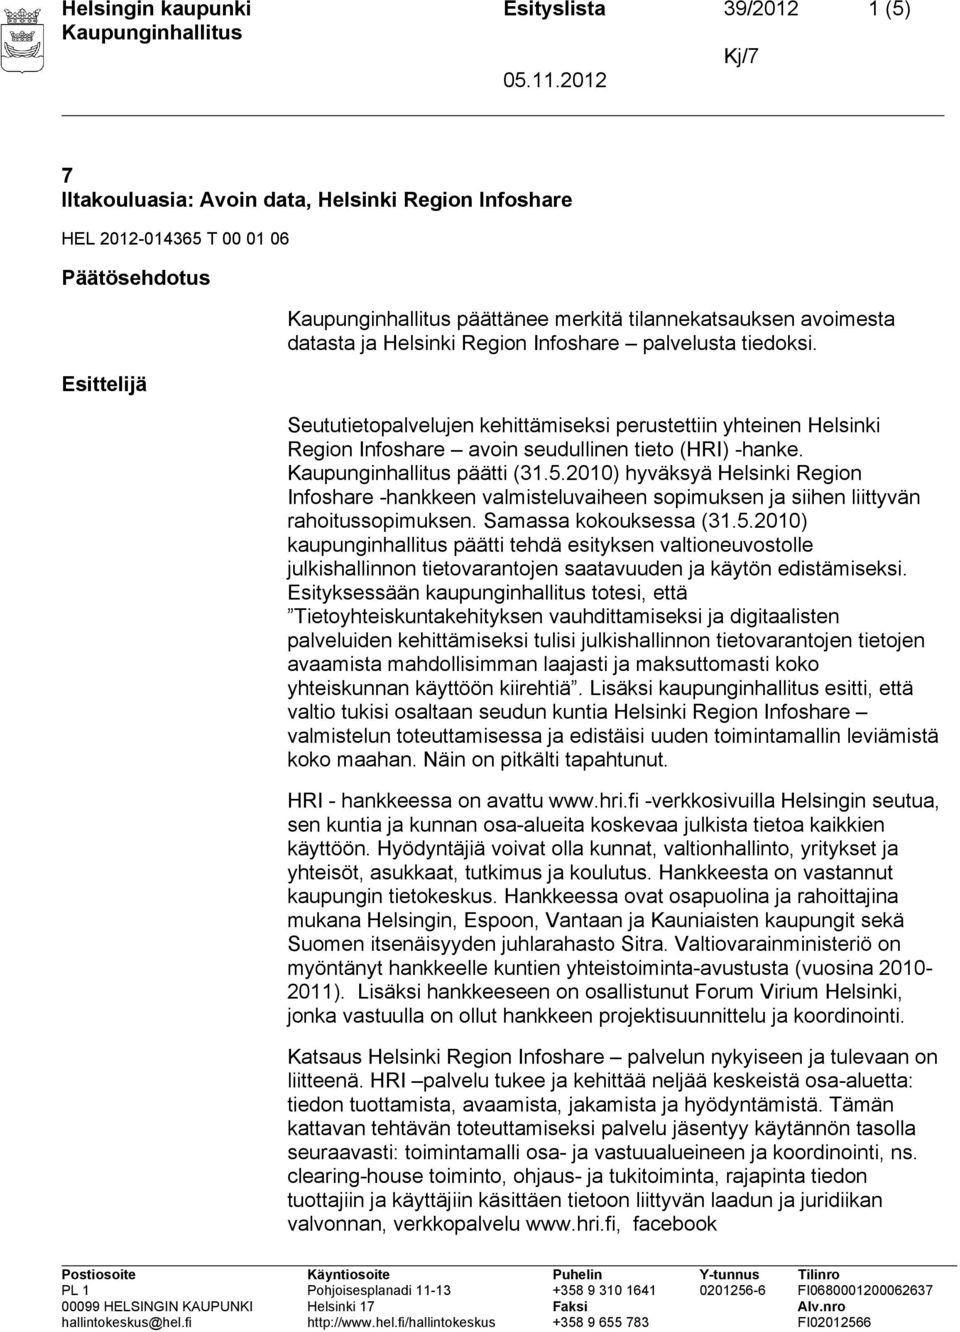 2010) hyväksyä Helsinki Region Infoshare -hankkeen valmisteluvaiheen sopimuksen ja siihen liittyvän rahoitussopimuksen. Samassa kokouksessa (31.5.